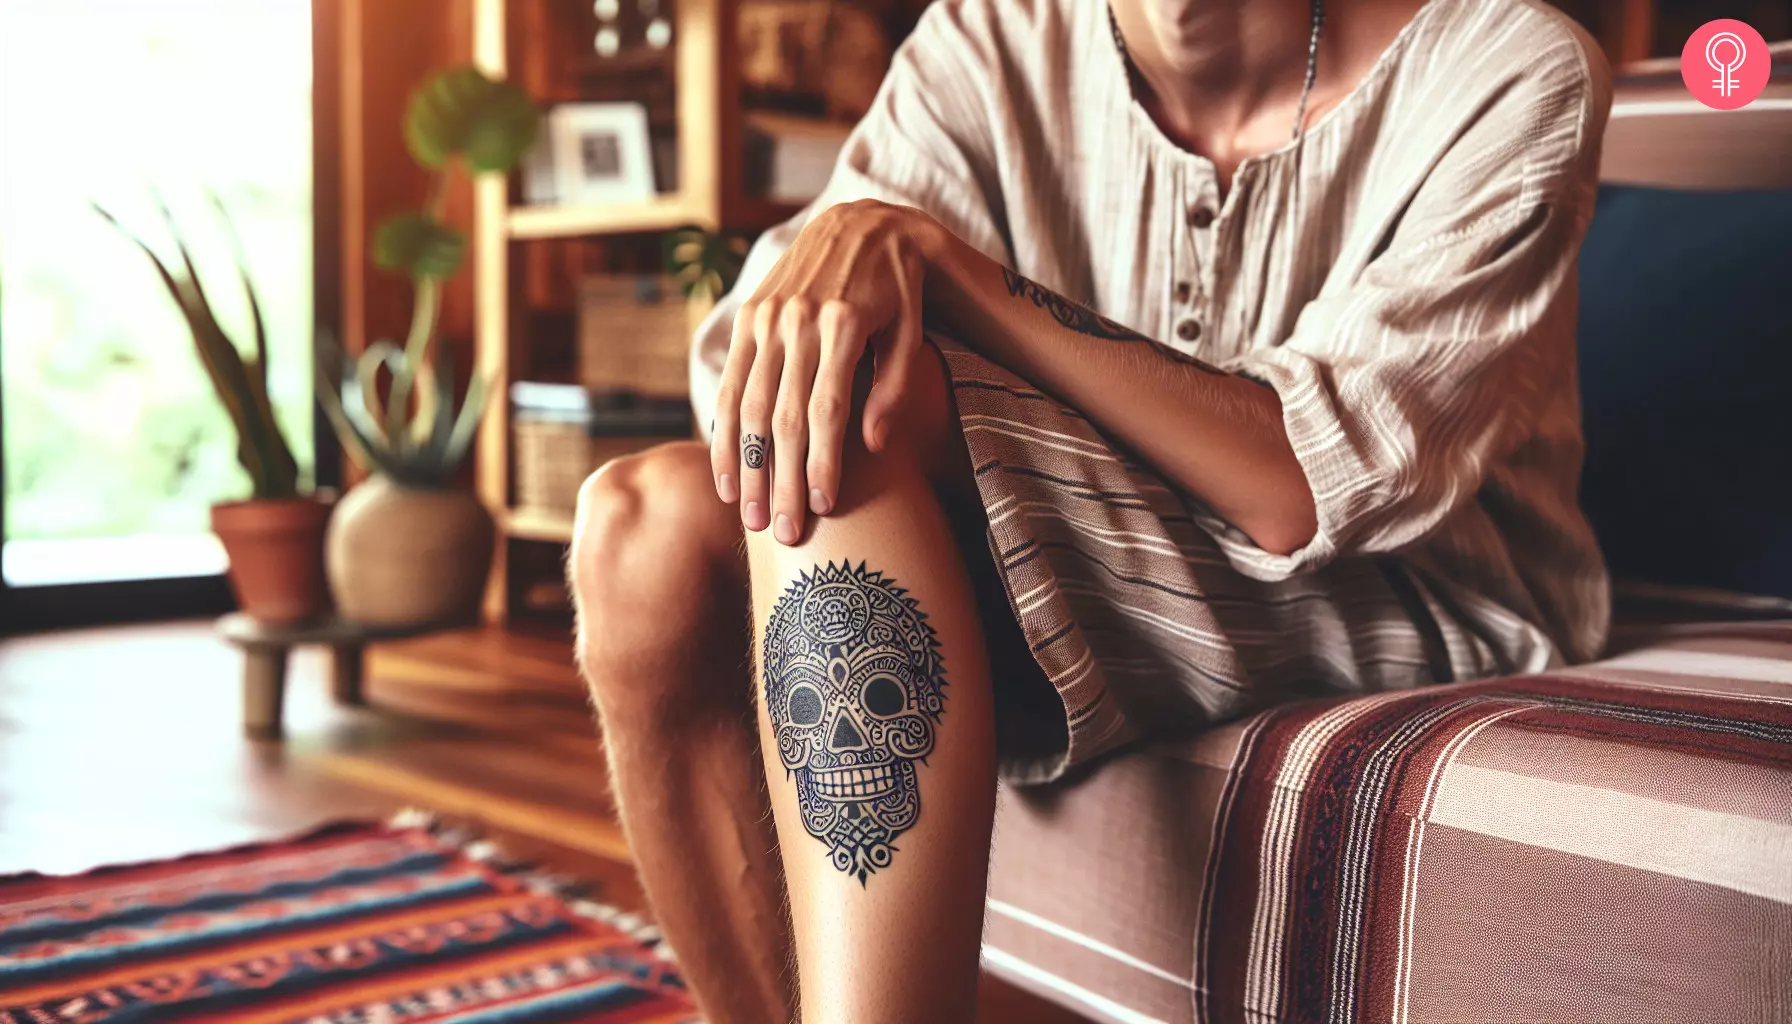 Mayan skull tattoo on a man’s leg